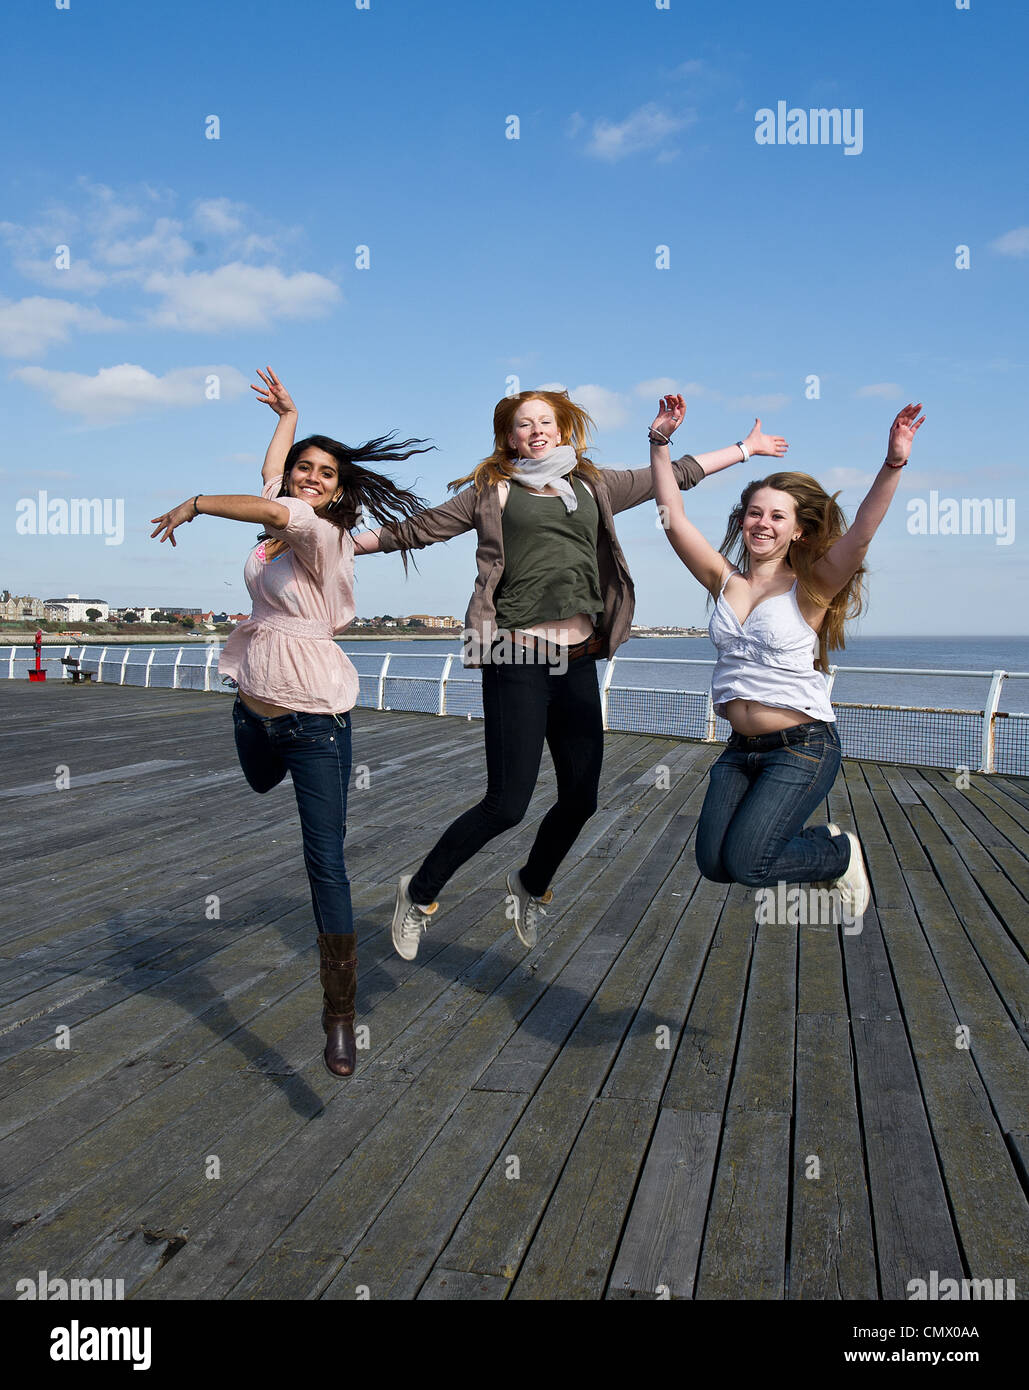 Trois jeunes filles sautant en l'air Banque D'Images